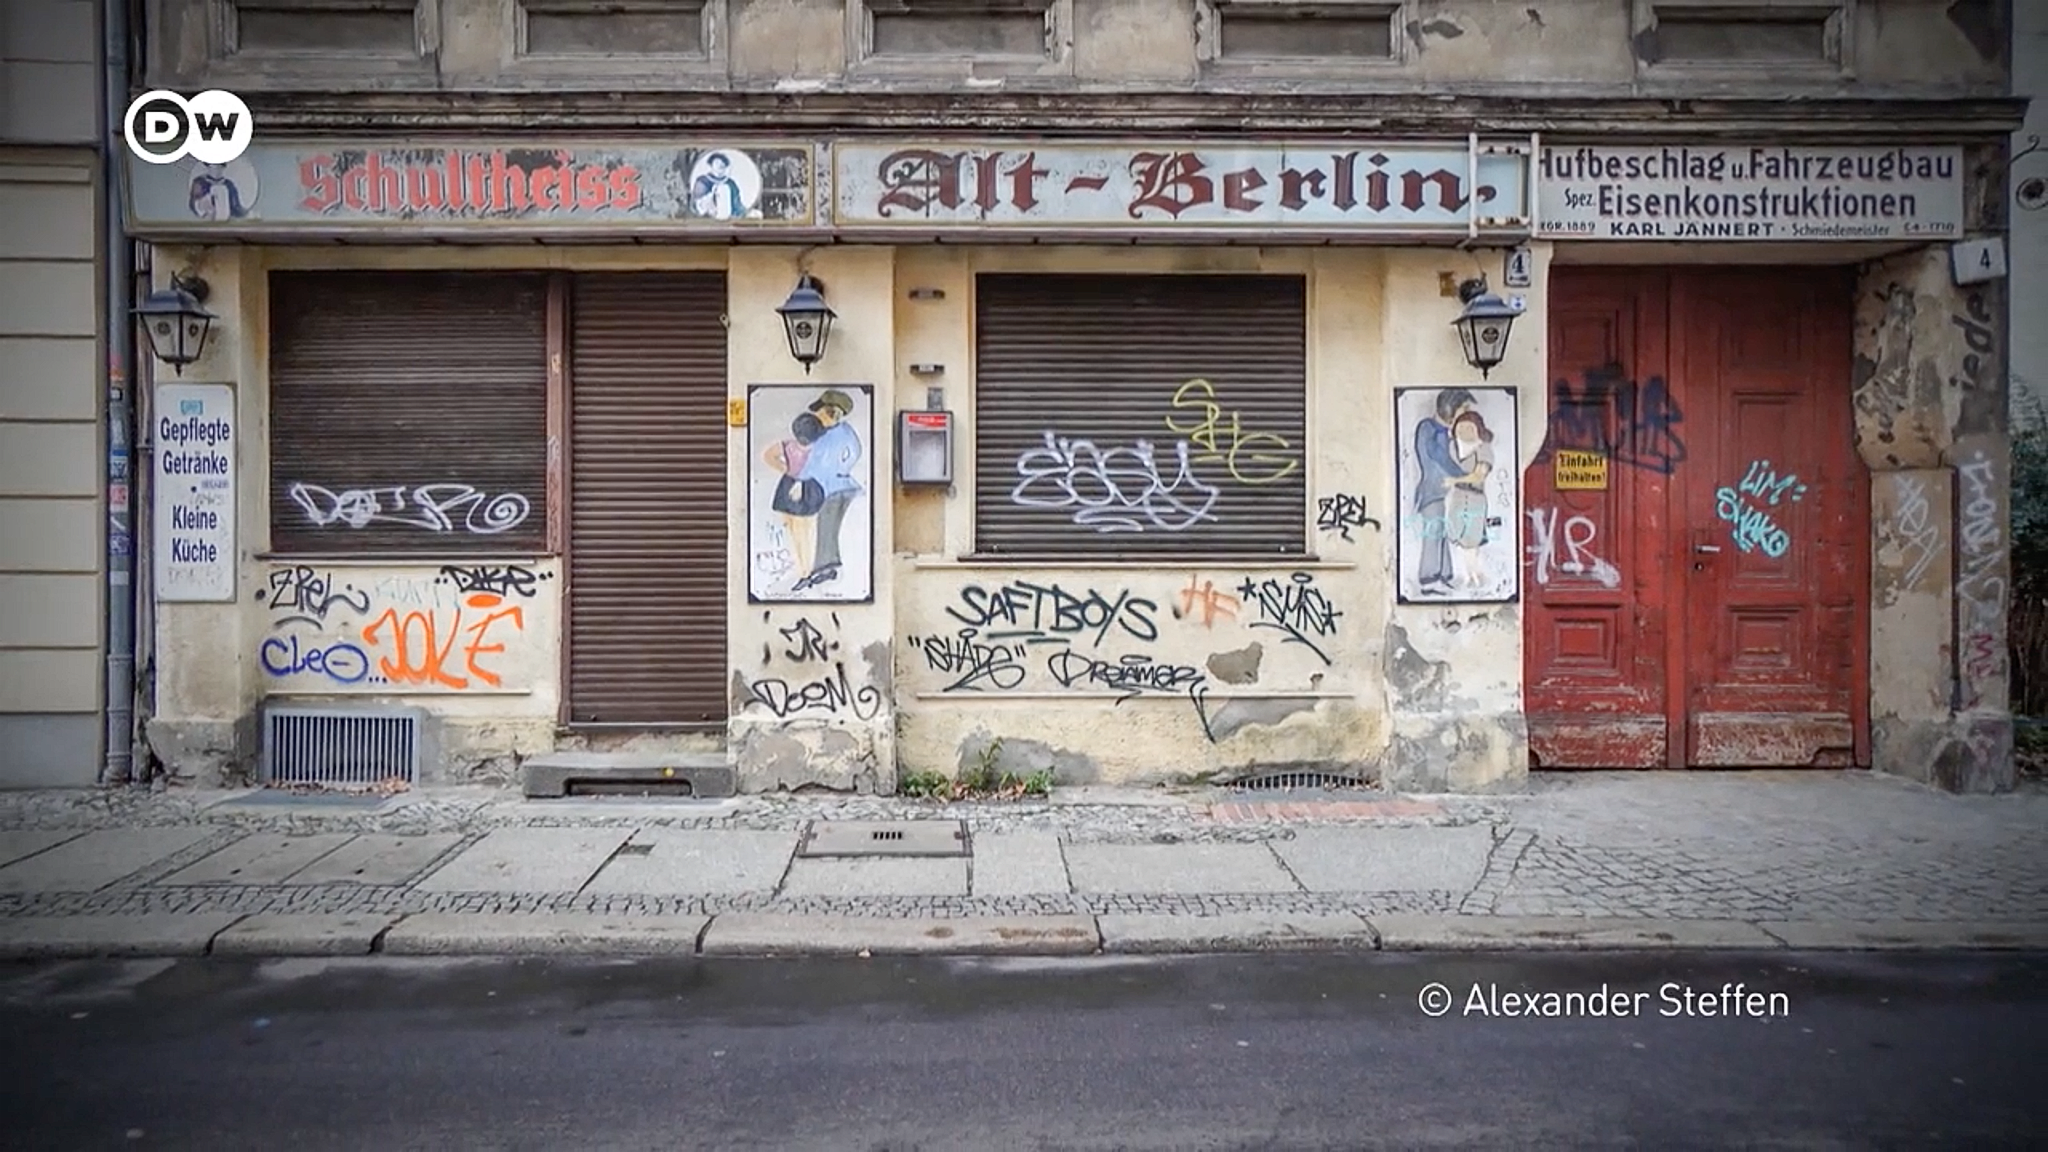 unrenoviertes Berliner Mietshaus mit Kneipenschriftzug Alt Berlin und vielen Graffitti